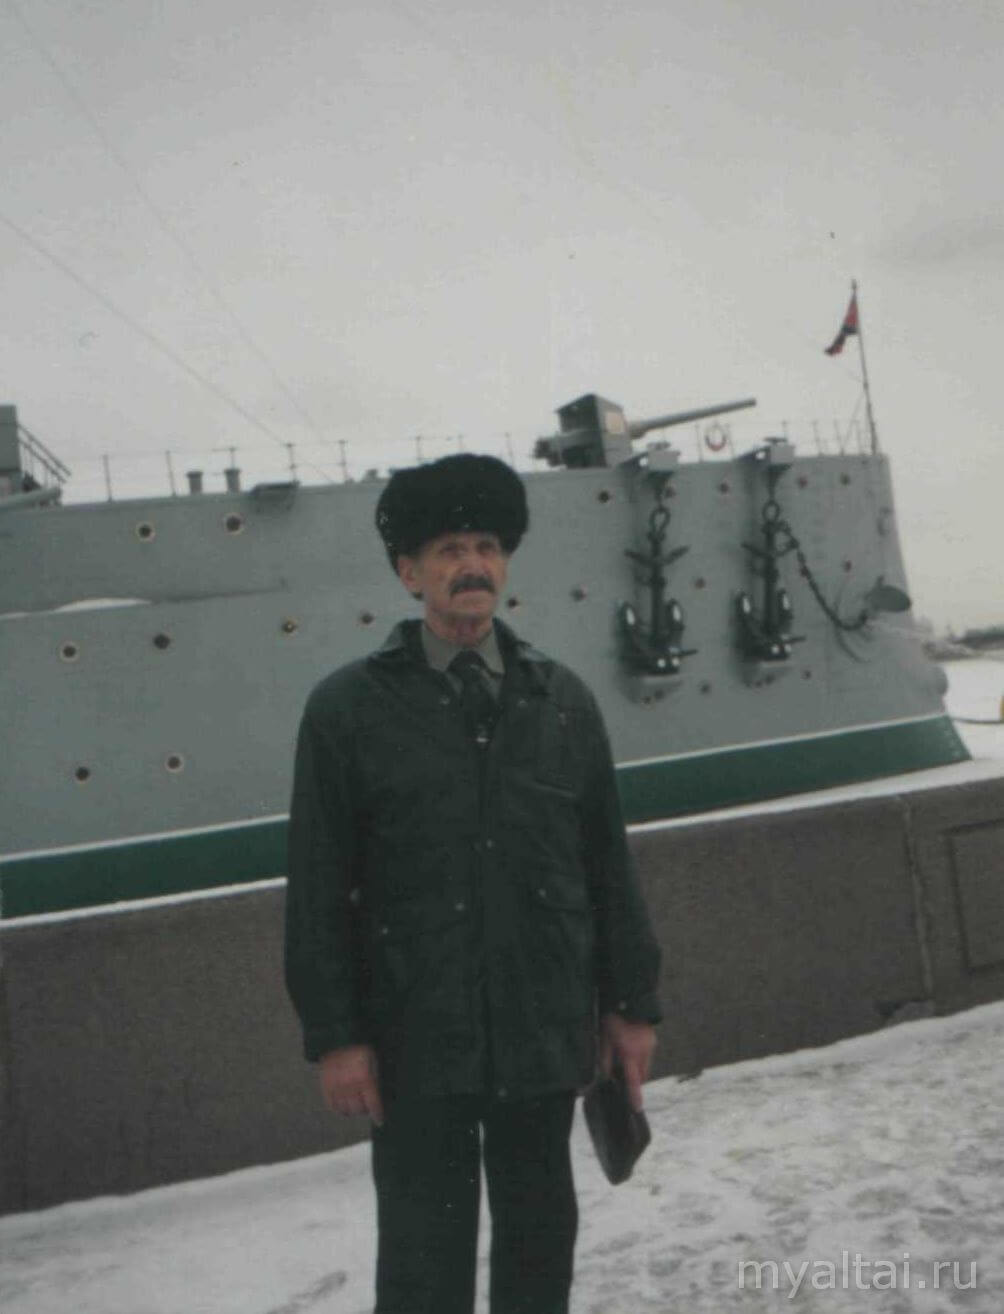 Щербинин П.С. у крейсера «Варяг», г. Санкт-Петербург, 2002 г.